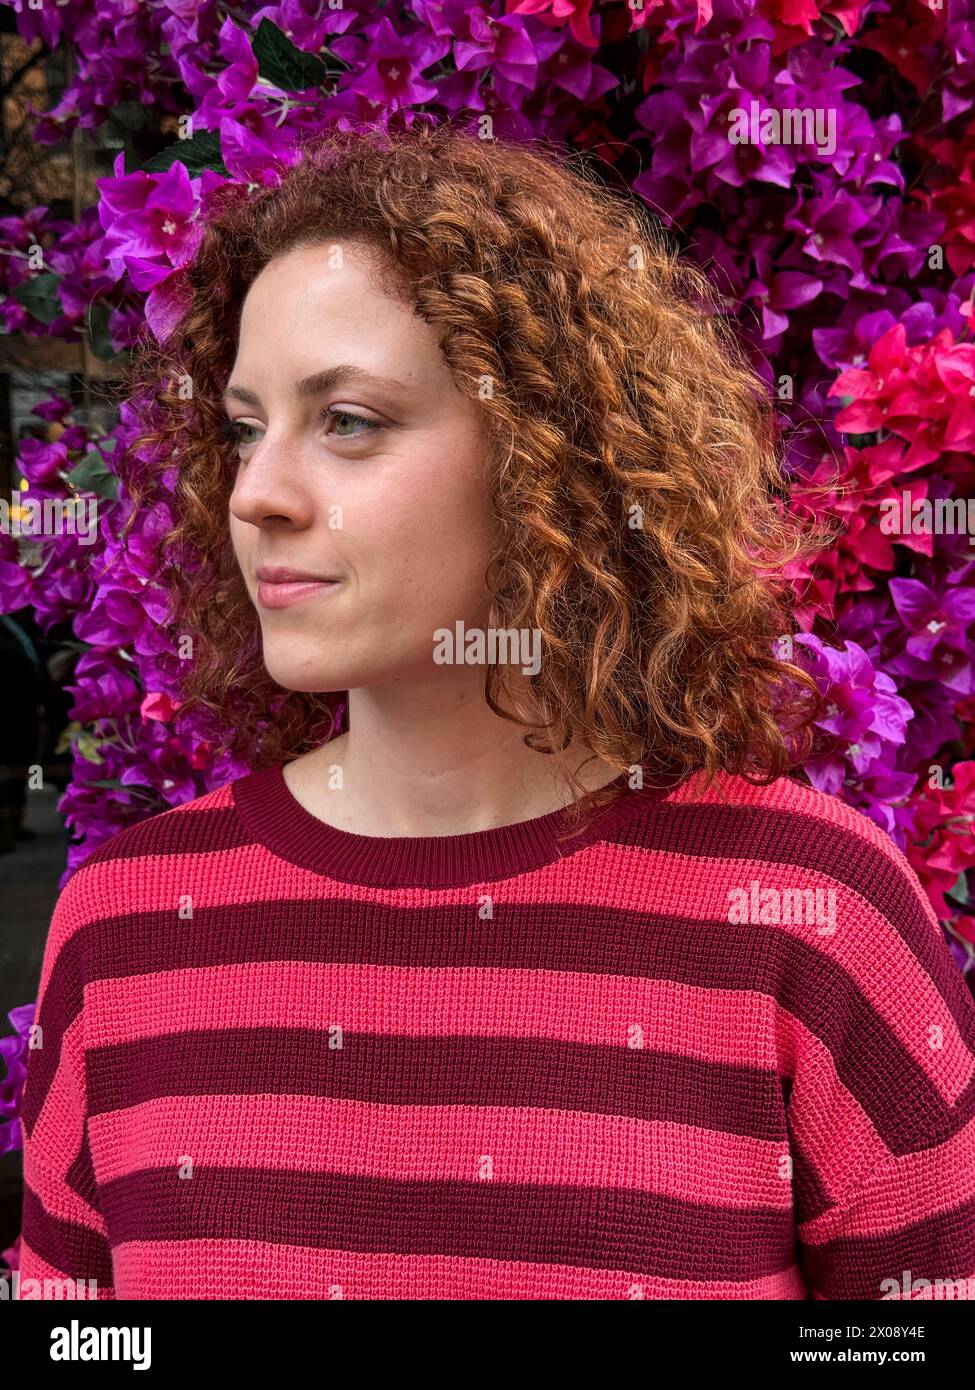 La giovane donna rossa con i capelli ricci si trova di fronte a una vivace bouganville Foto Stock